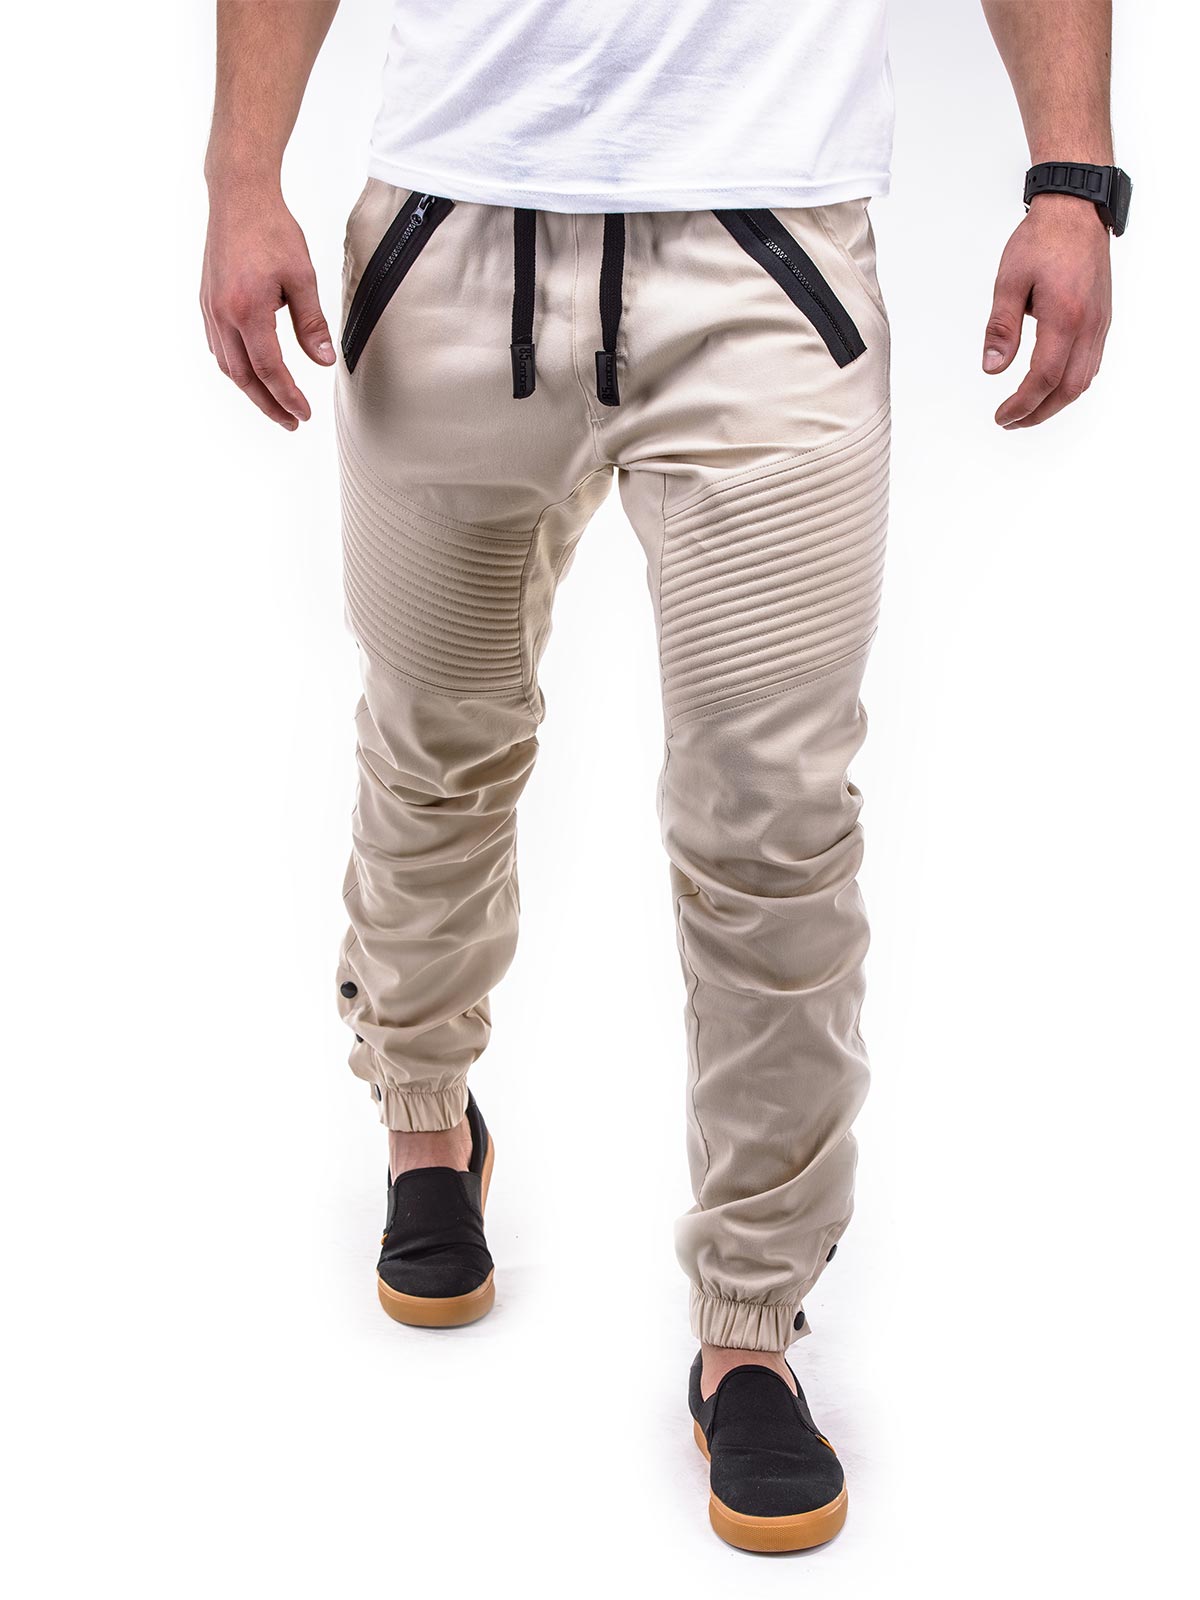 Men's pants joggers P389 - beige | MODONE wholesale - Clothing For Men